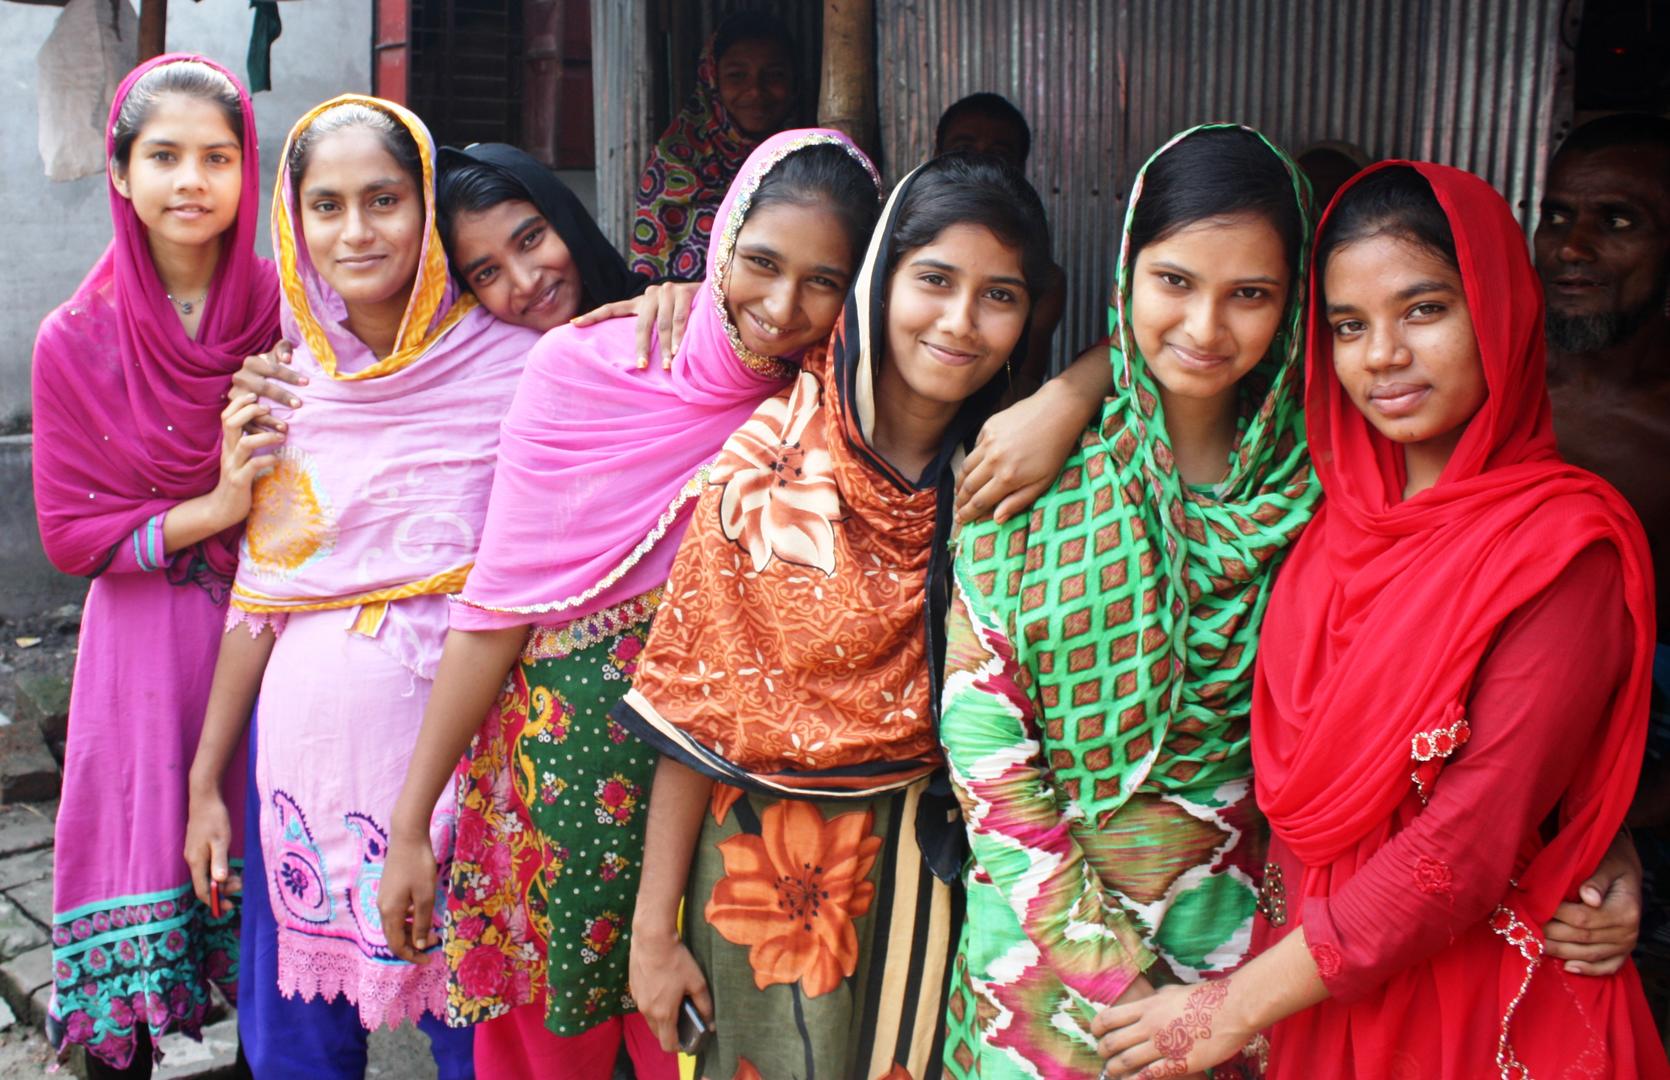 A row of smiling women wearing saris.